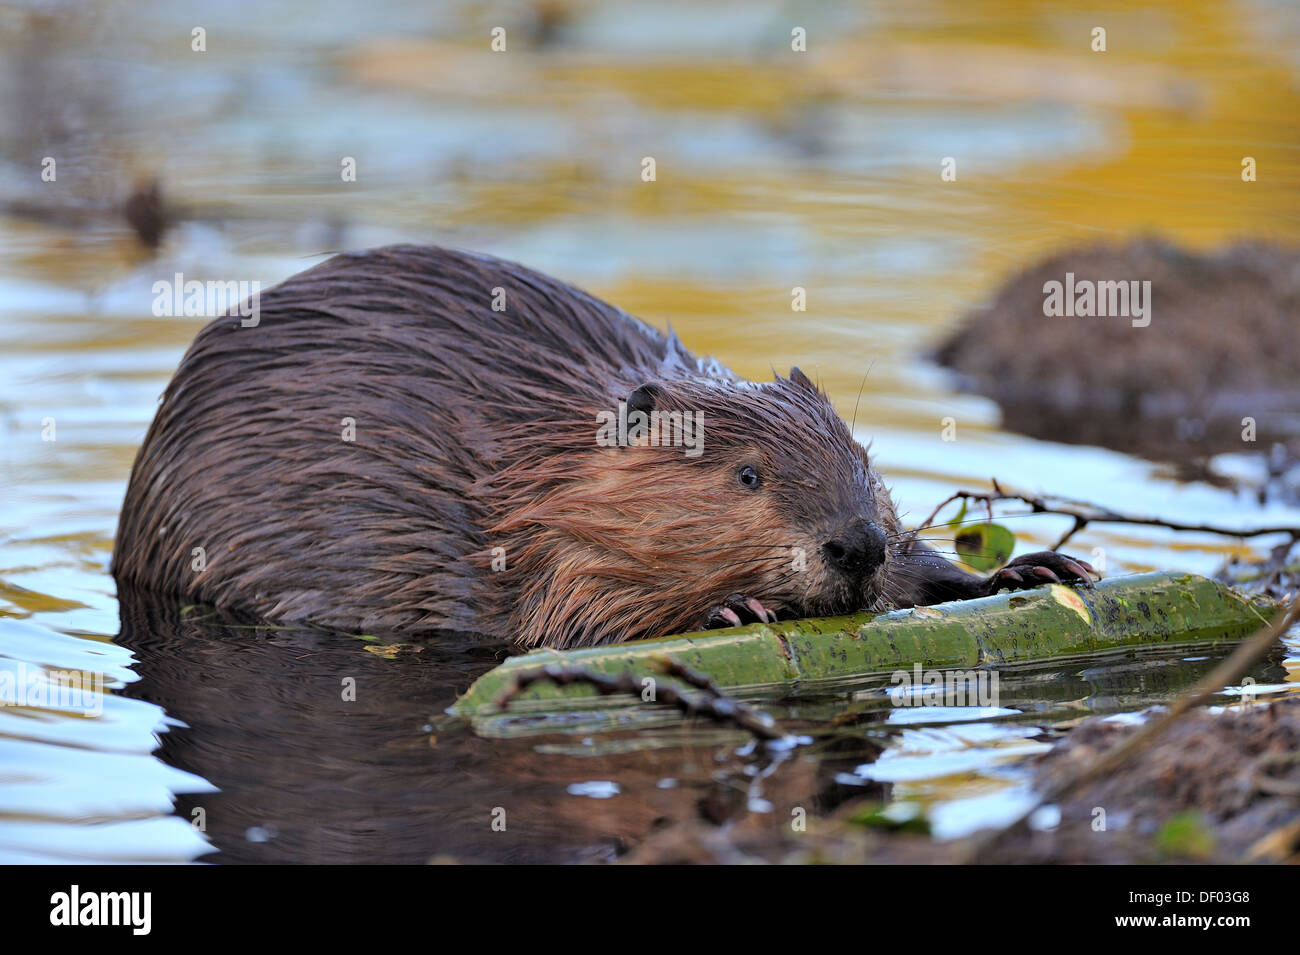 A beaver feeding on some bark from a green aspen tree Stock Photo